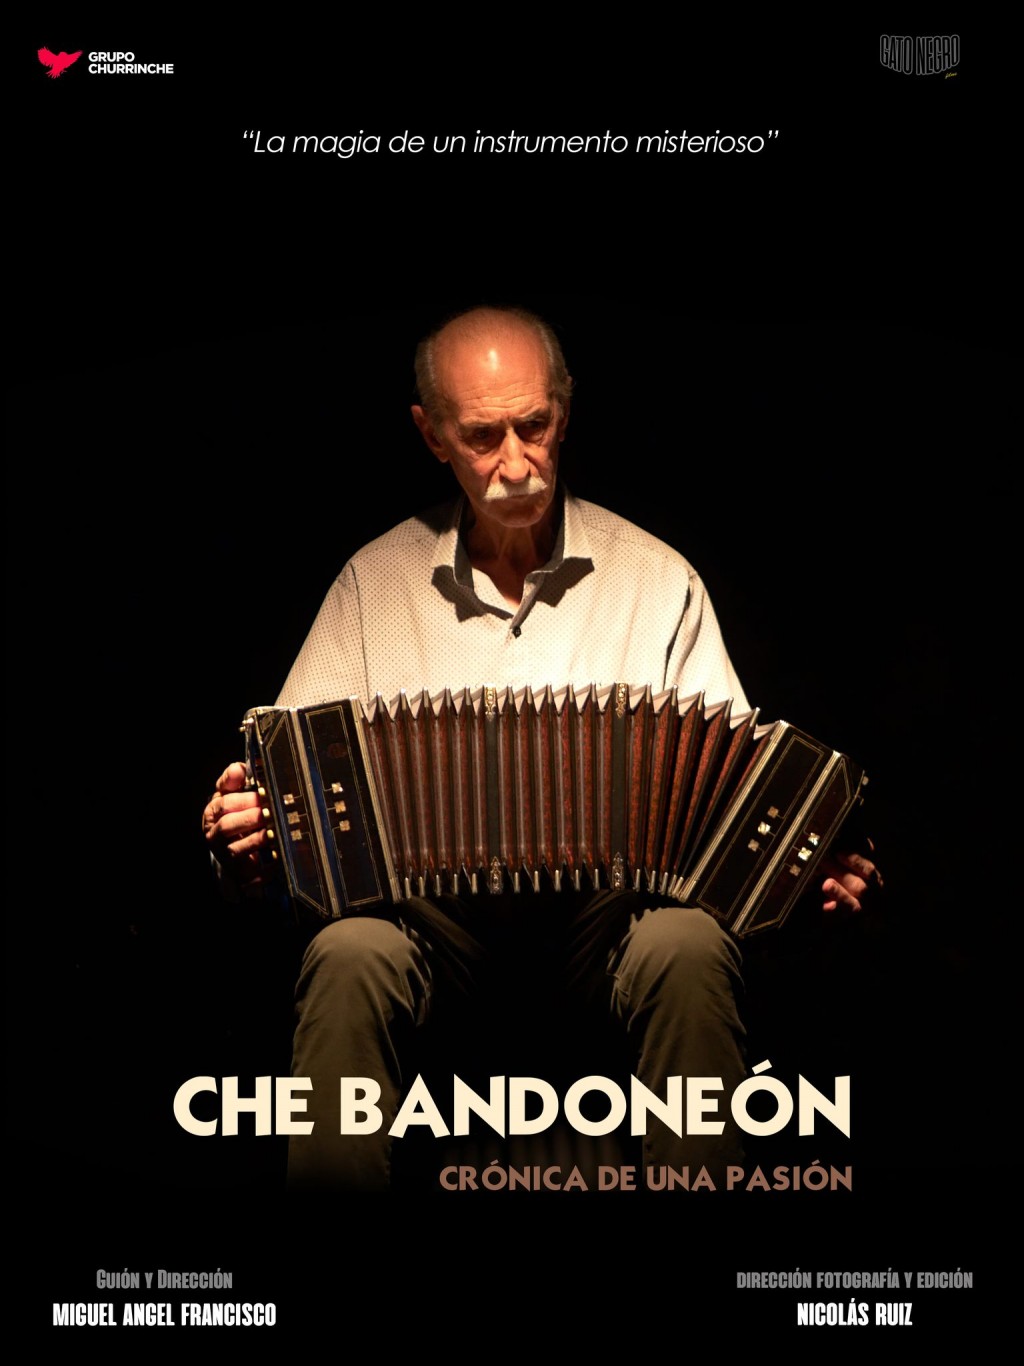 Micki Francisco confirmó que la presentación del documental “Che Bandondeon” será más adelante, en una entrevista realizada en FM 10